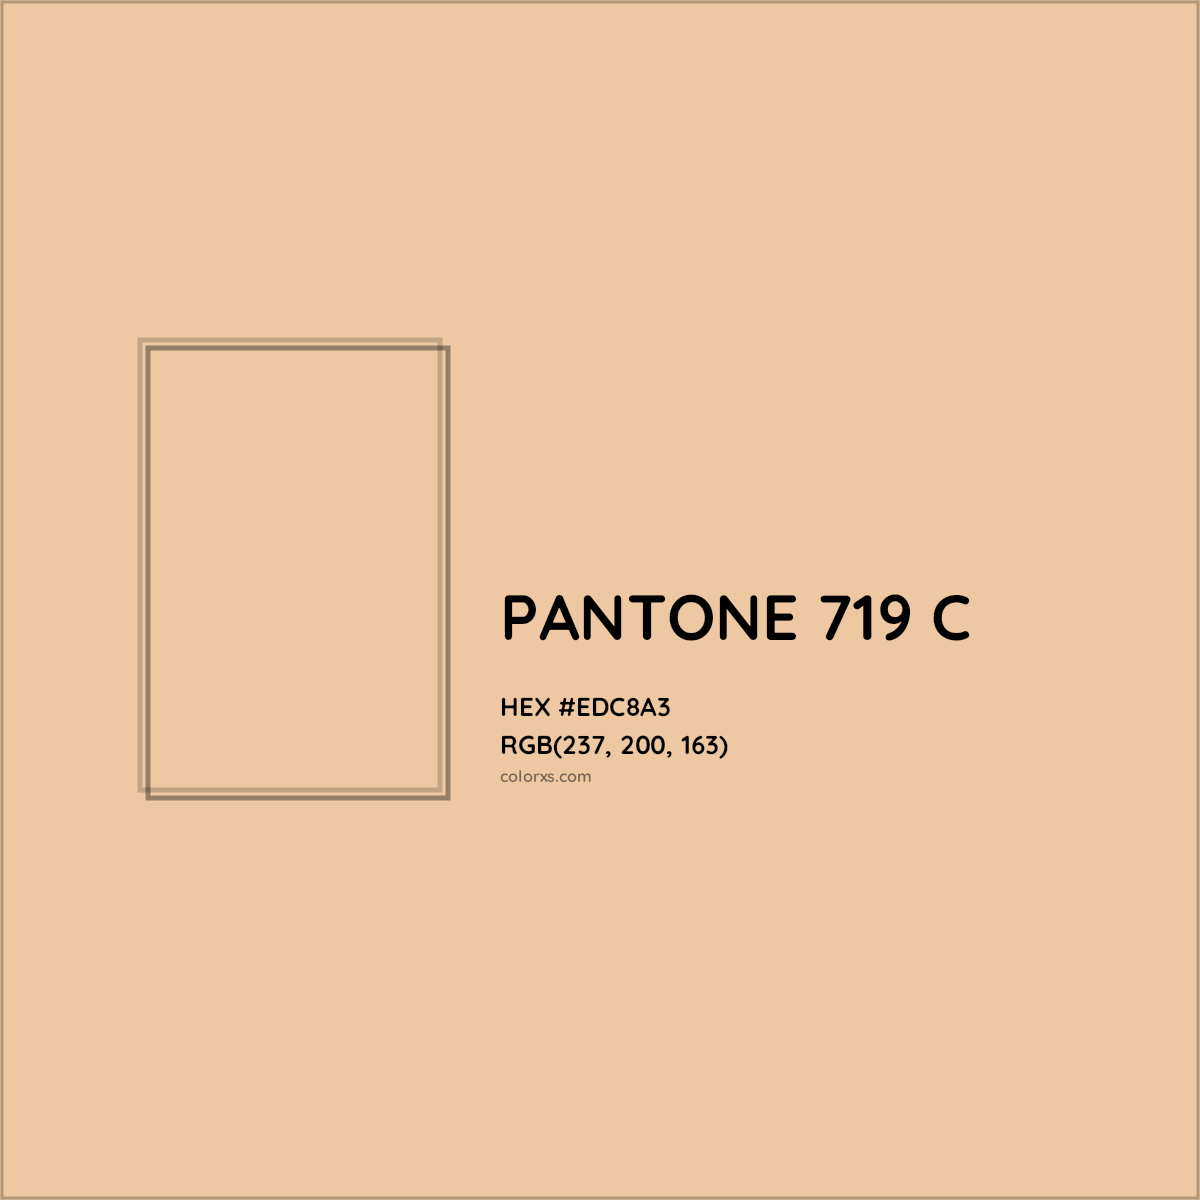 HEX #EDC8A3 PANTONE 719 C CMS Pantone PMS - Color Code